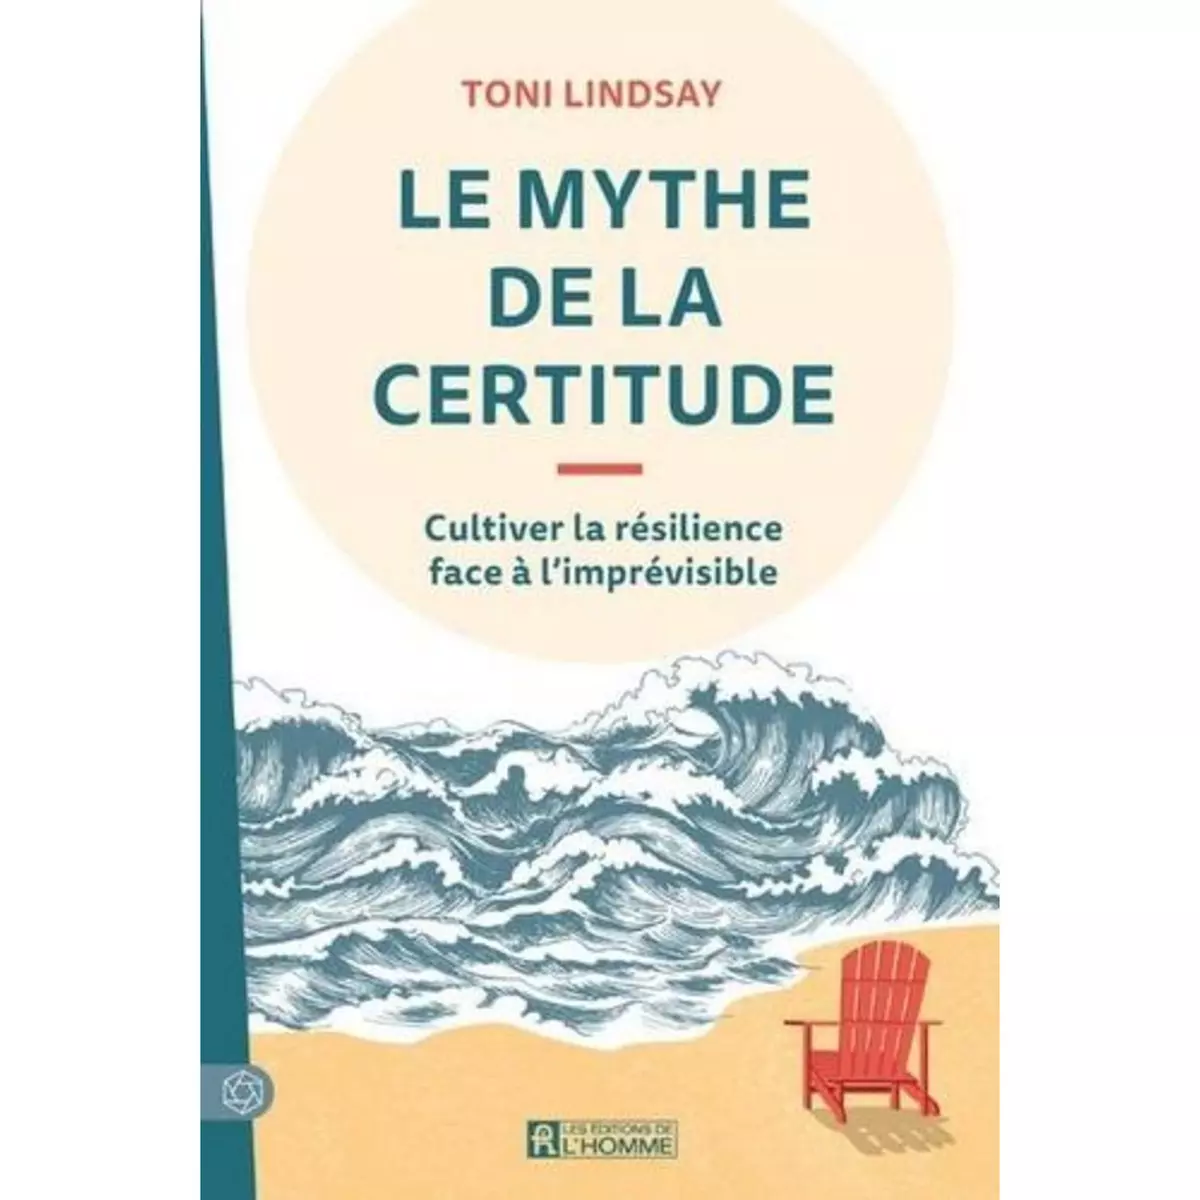  LE MYTHE DE LA CERTITUDE. CULTIVER LA RESILIENCE FACE A L'IMPREVISIBLE, Lindsay Toni